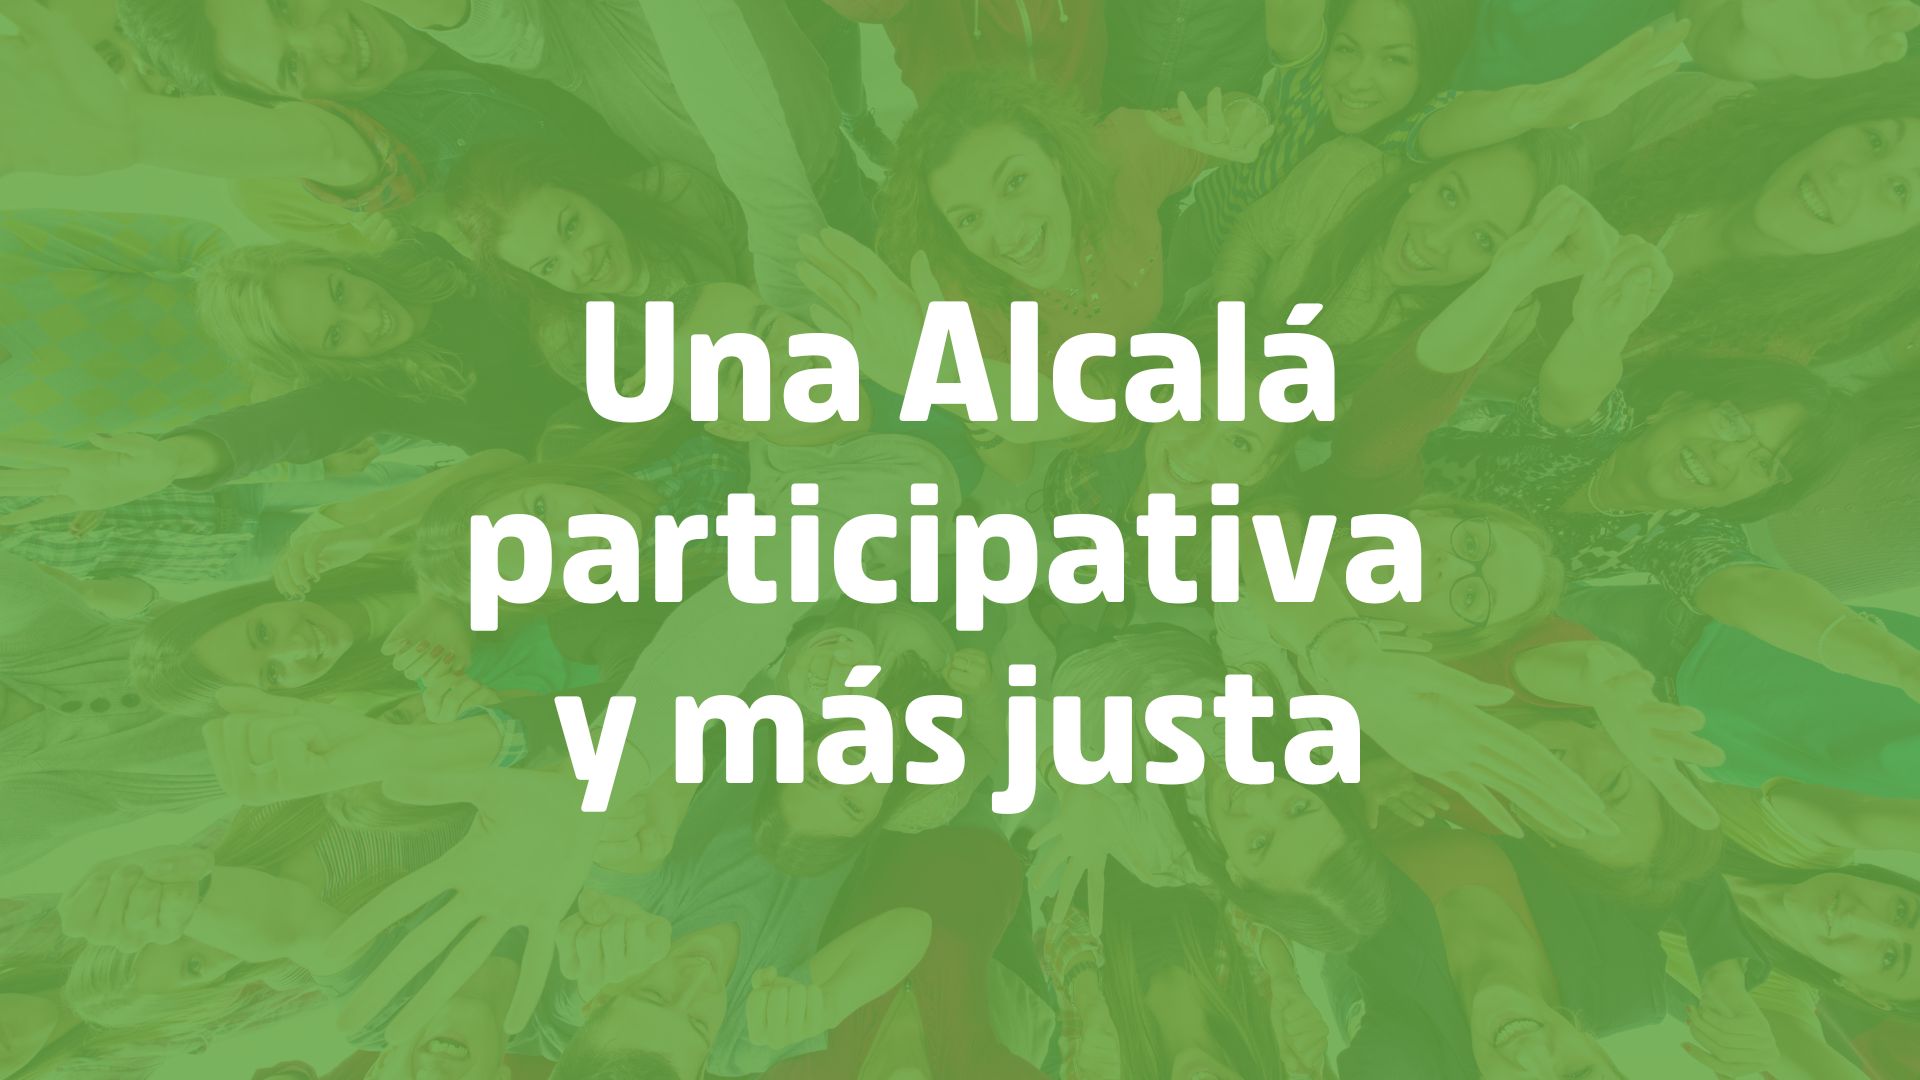 9. Una Alcalá participativa y más justa